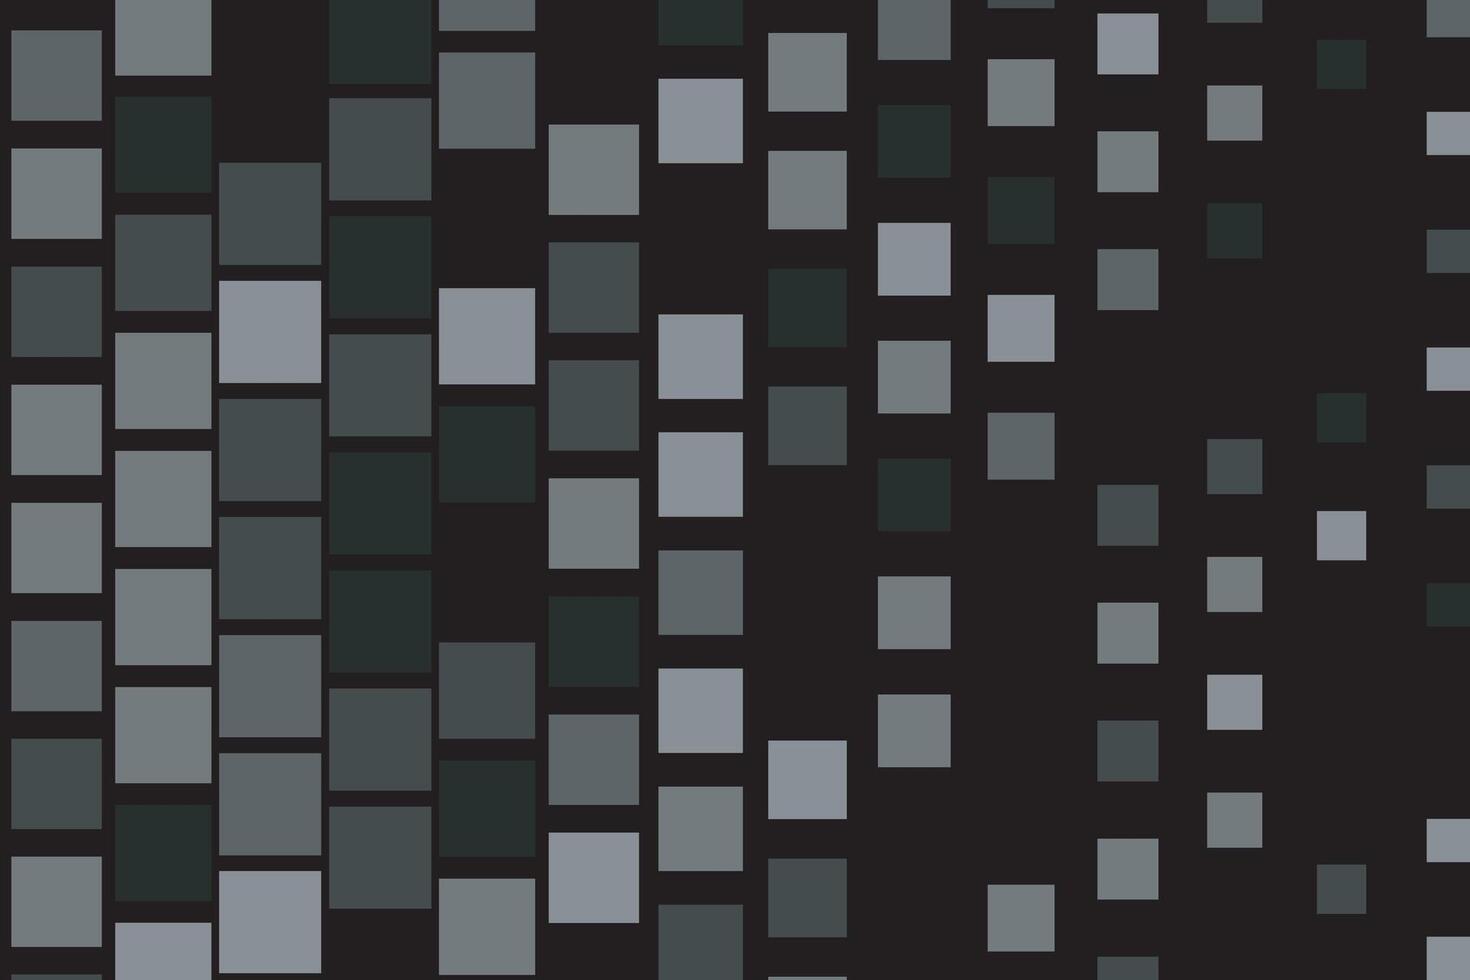 svart halvton punkt spannmål textur pixel popkonst abstrakt mönster bakgrund vektor